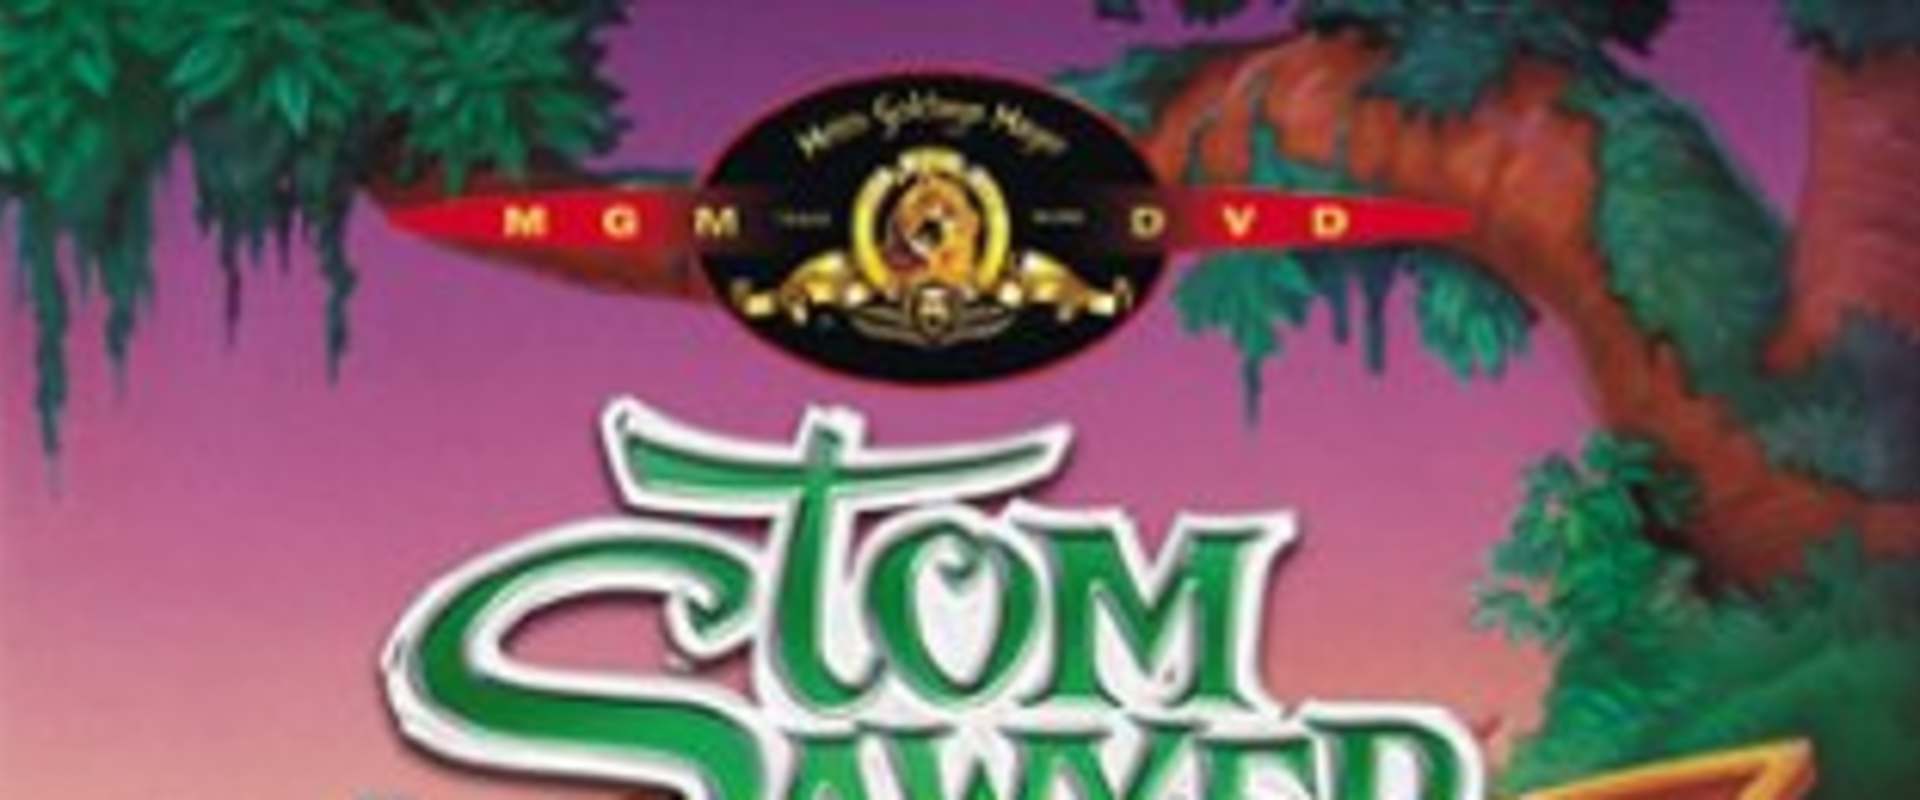 Tom Sawyer background 2